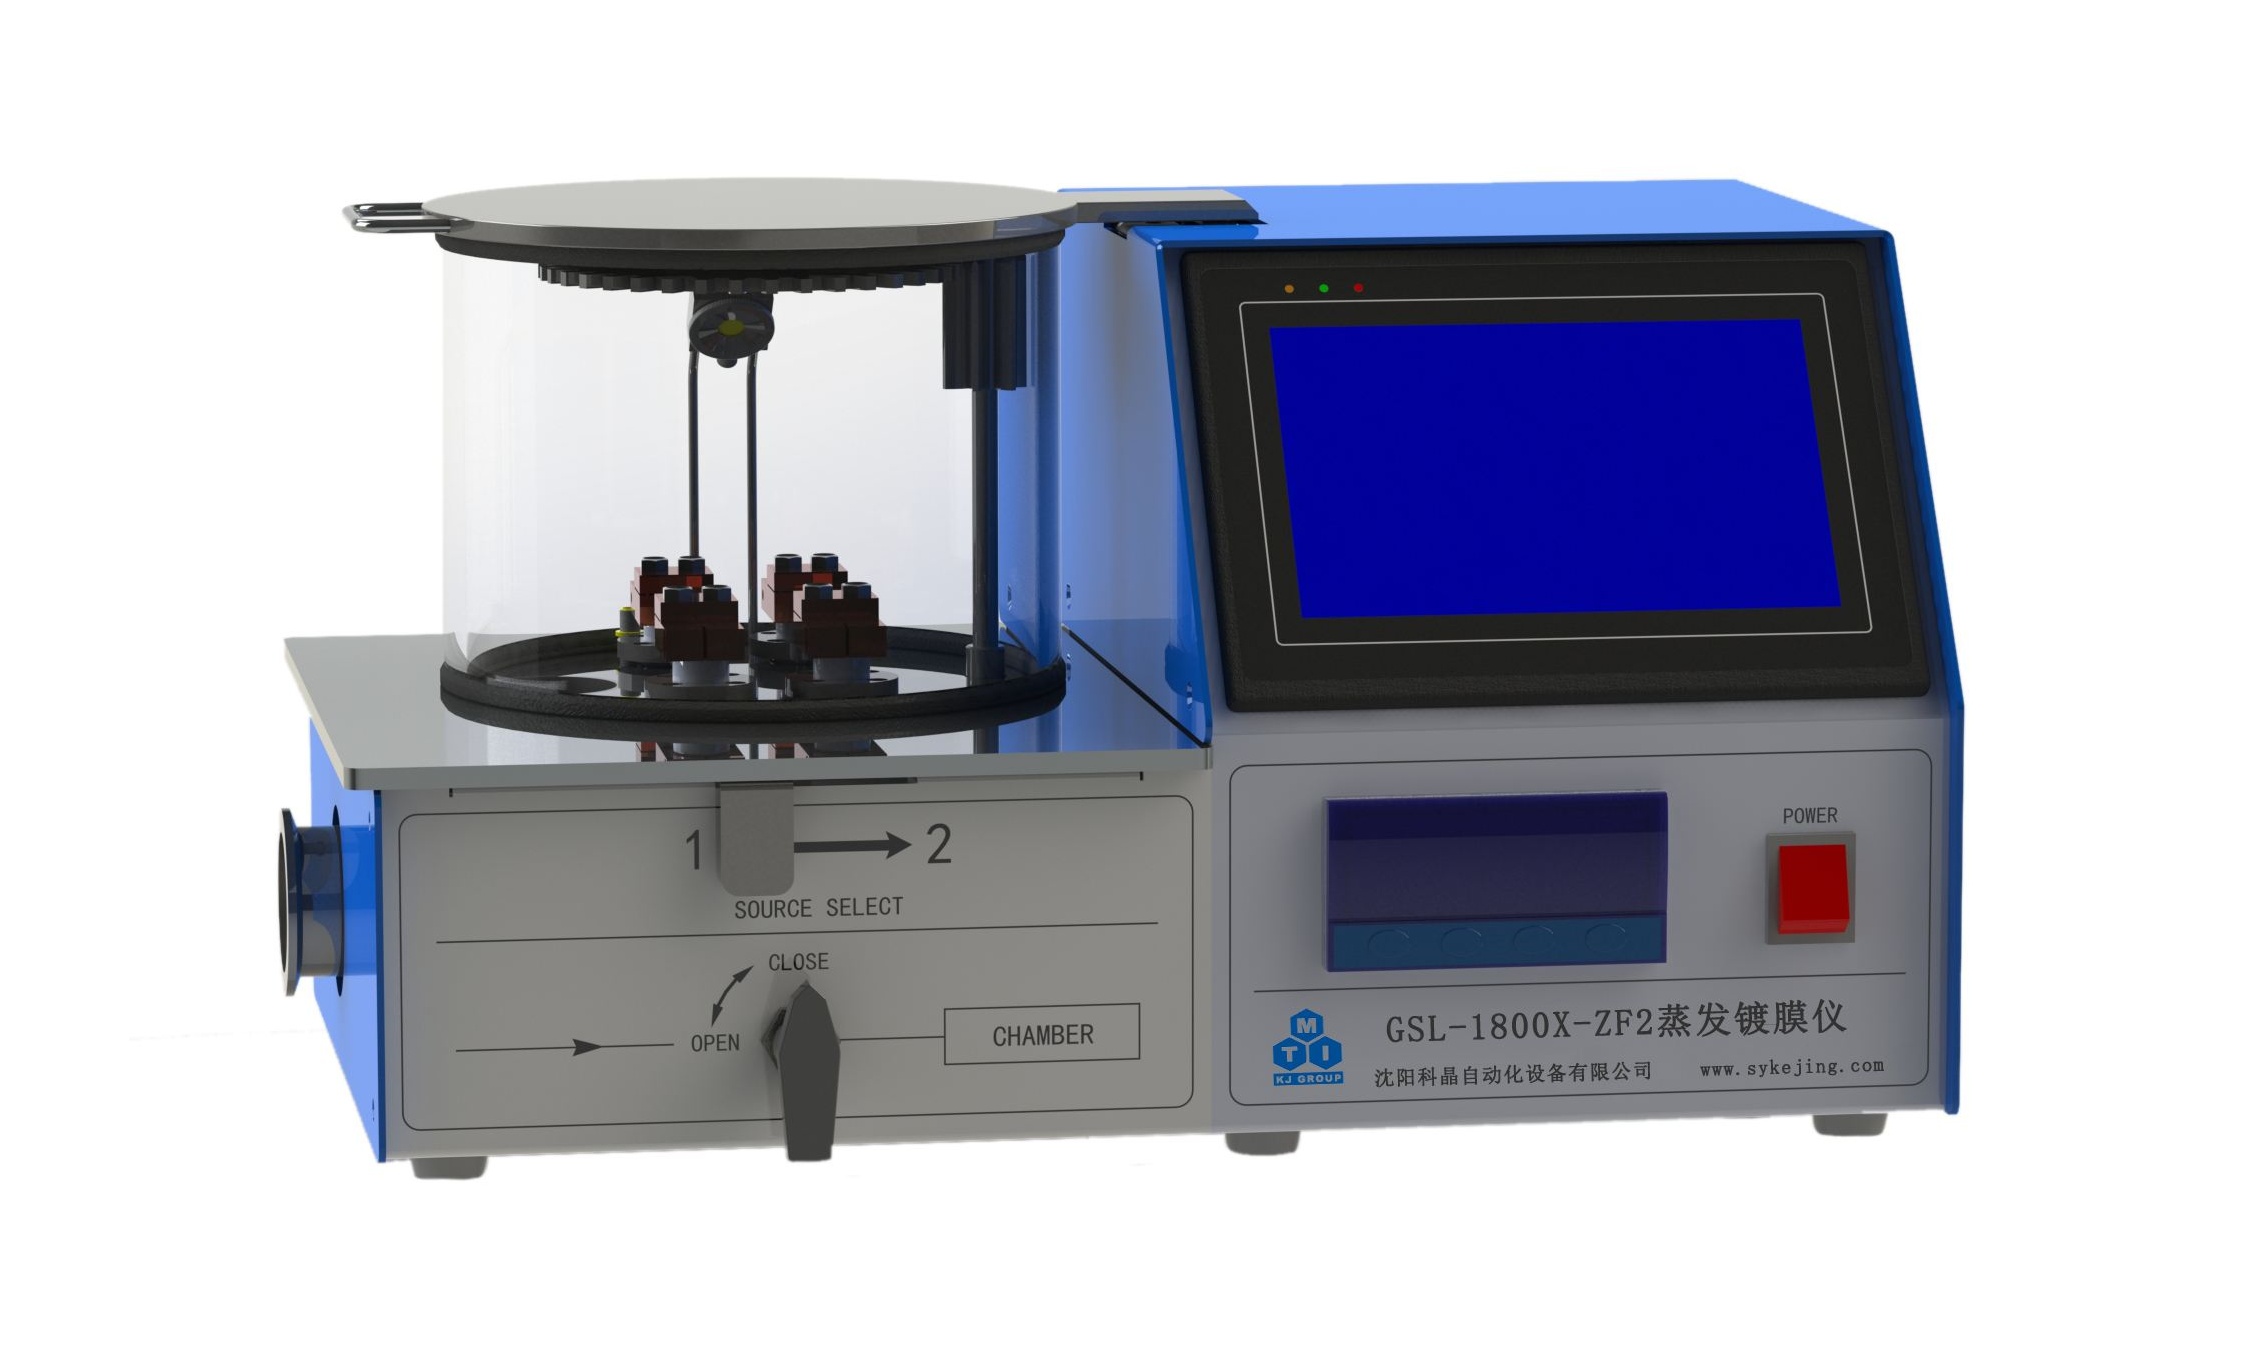 惠州学院磁控溅射镀膜仪等仪器设备采购项目招标